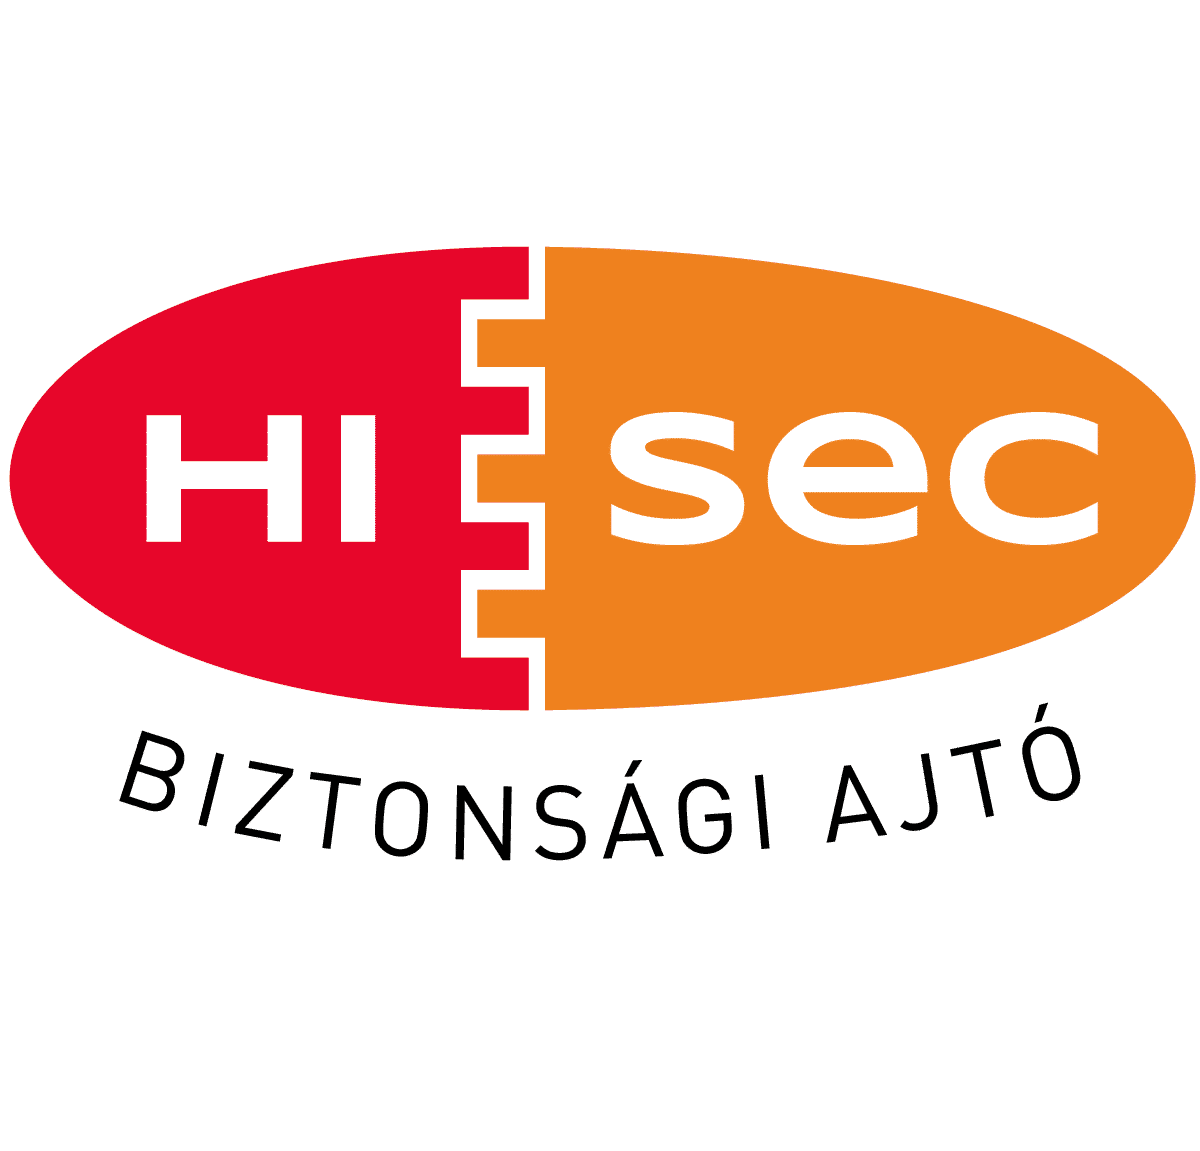 HiSec Biztonsági ajtó márkakereskedés és áruház